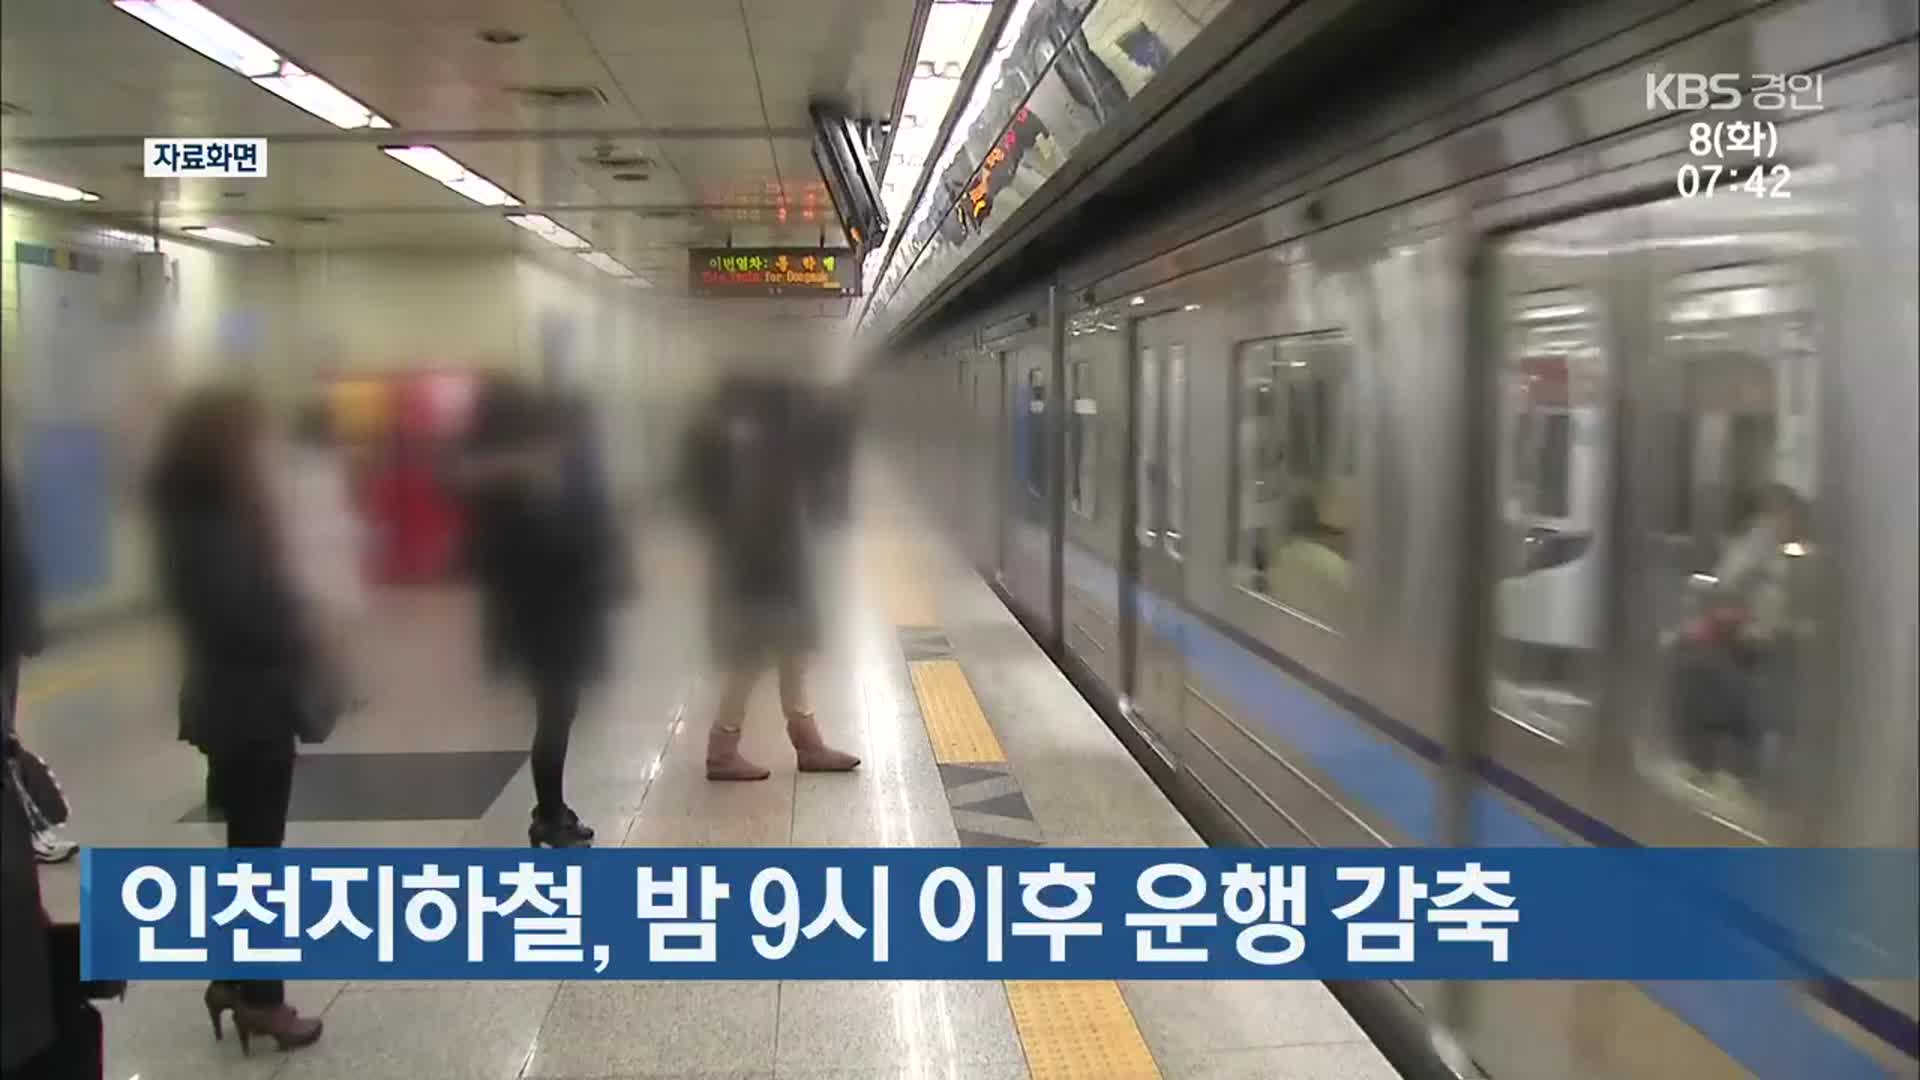 인천지하철, 밤 9시 이후 운행 감축